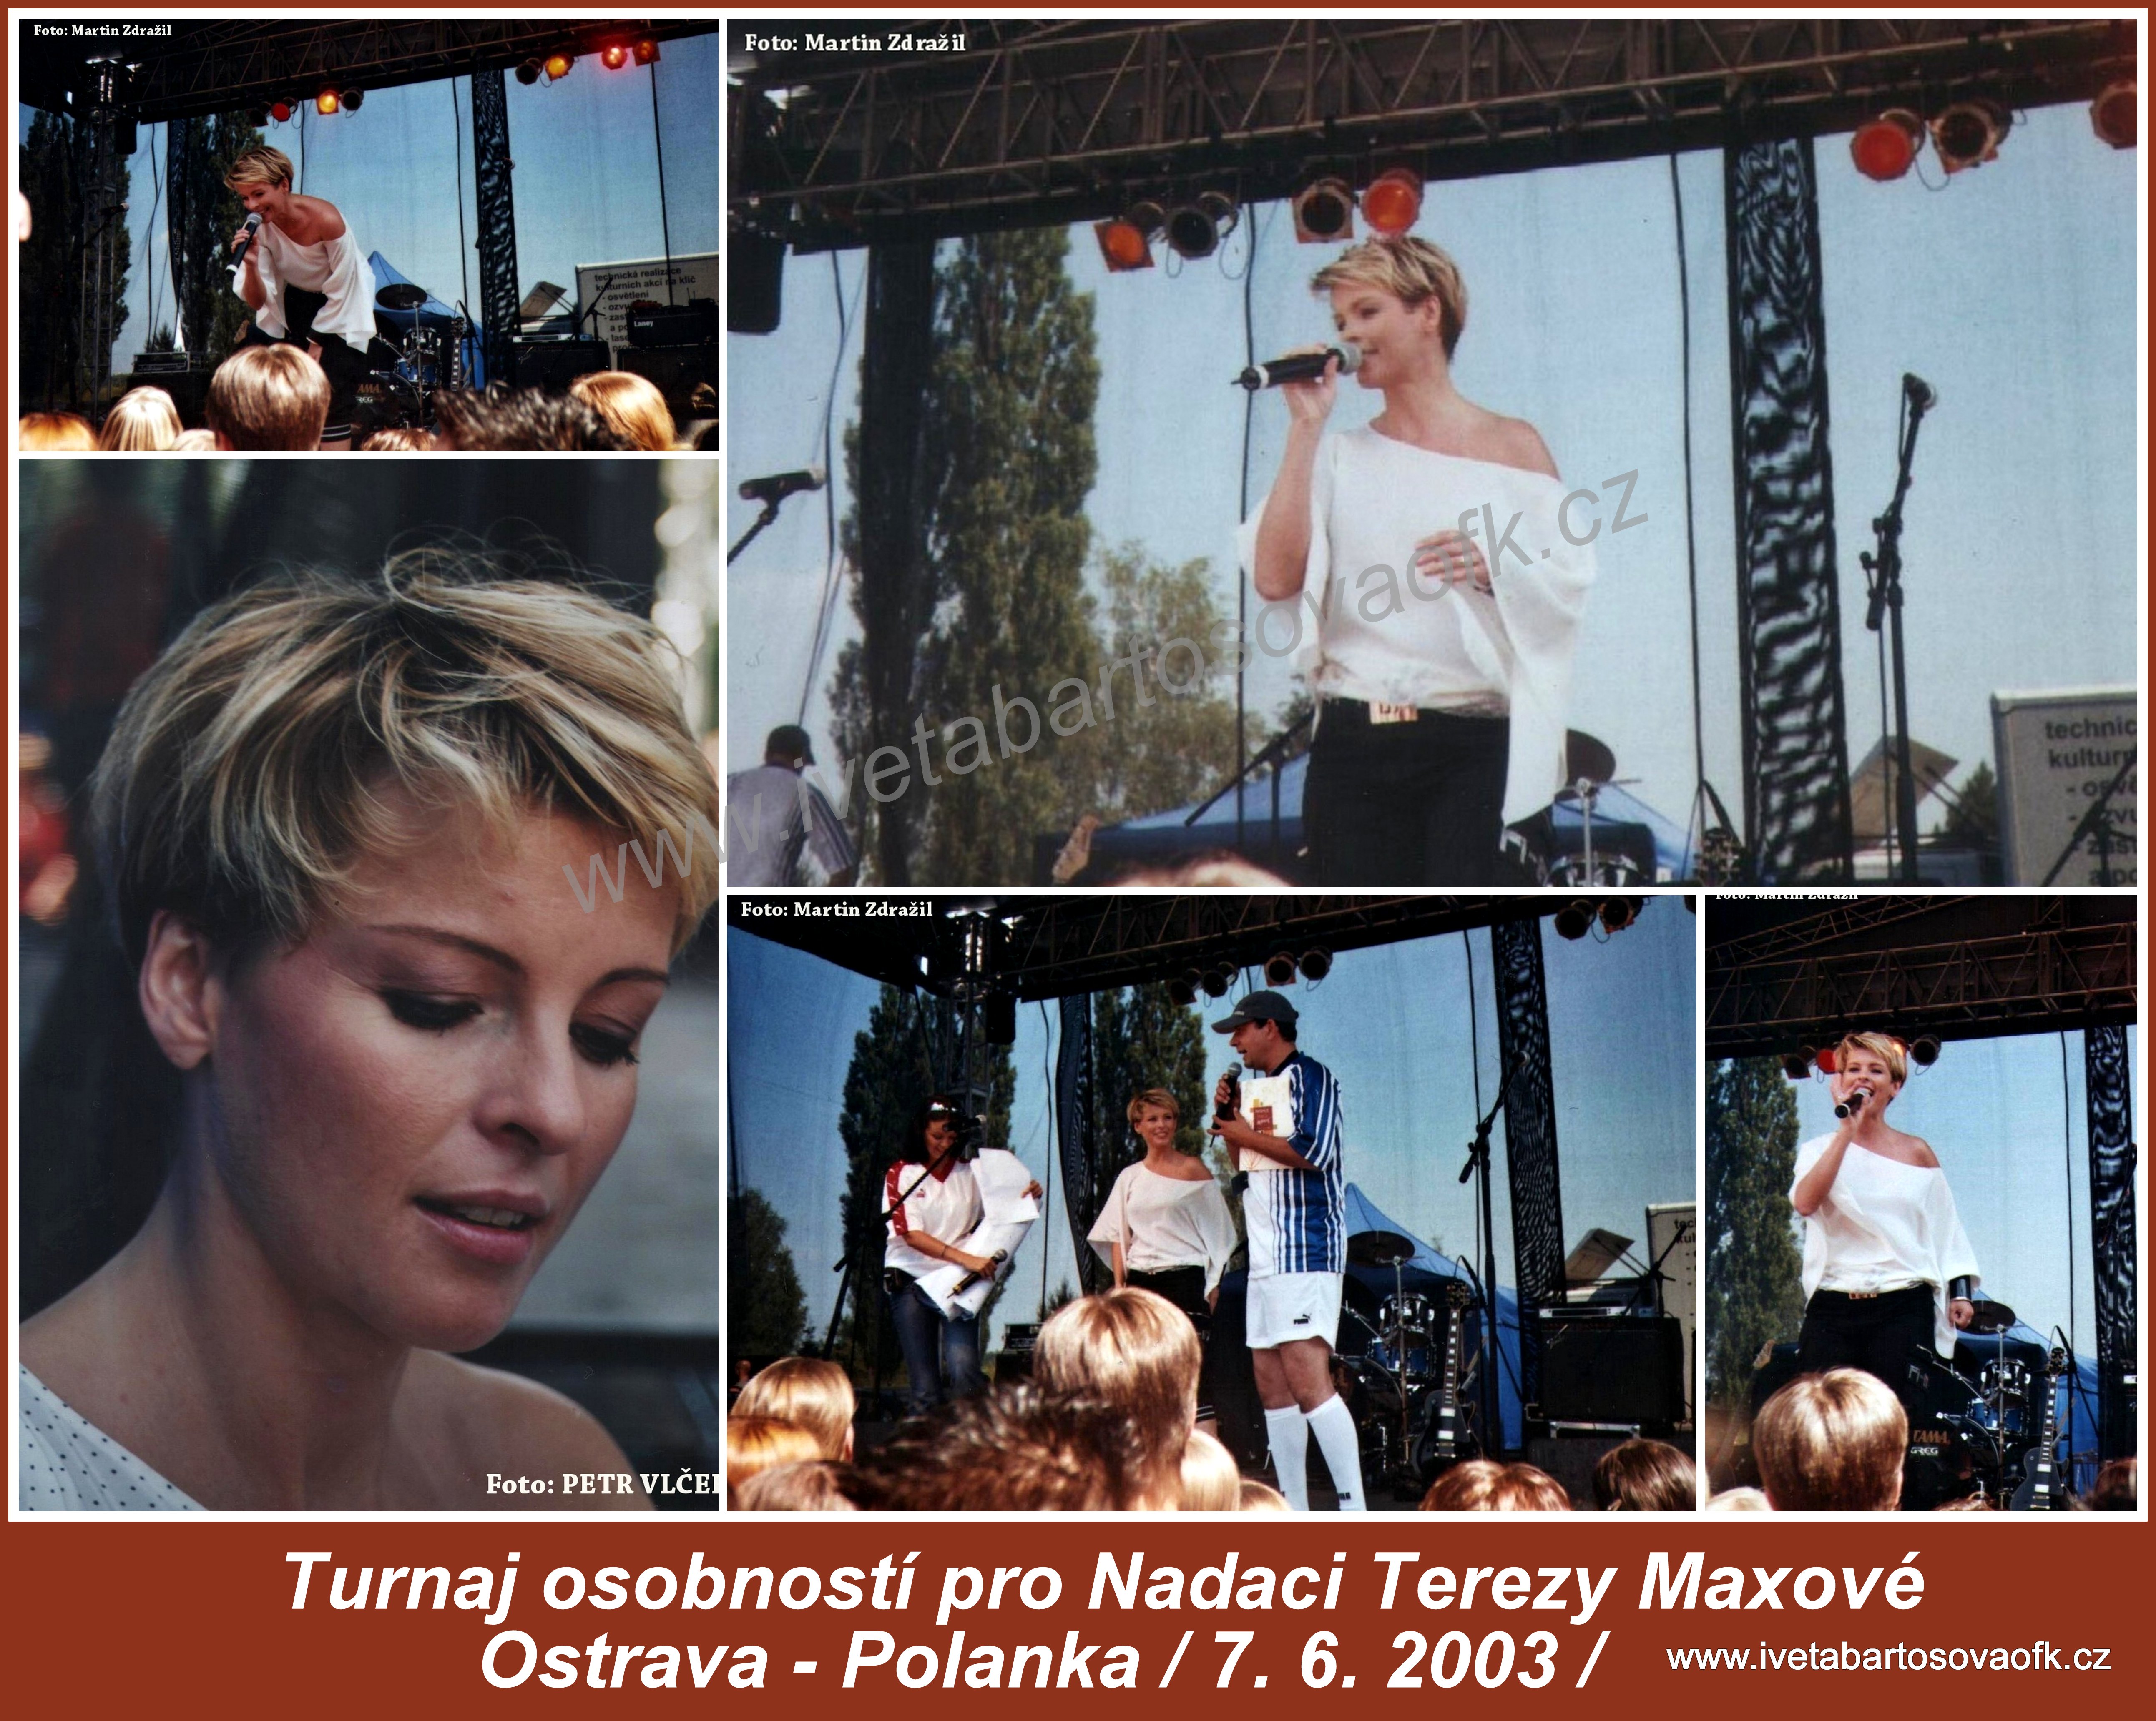 1   Turnaj osobností pro Nadaci Terezy Maxové  /Ostrava - Polanka / 7. 6. 2003/